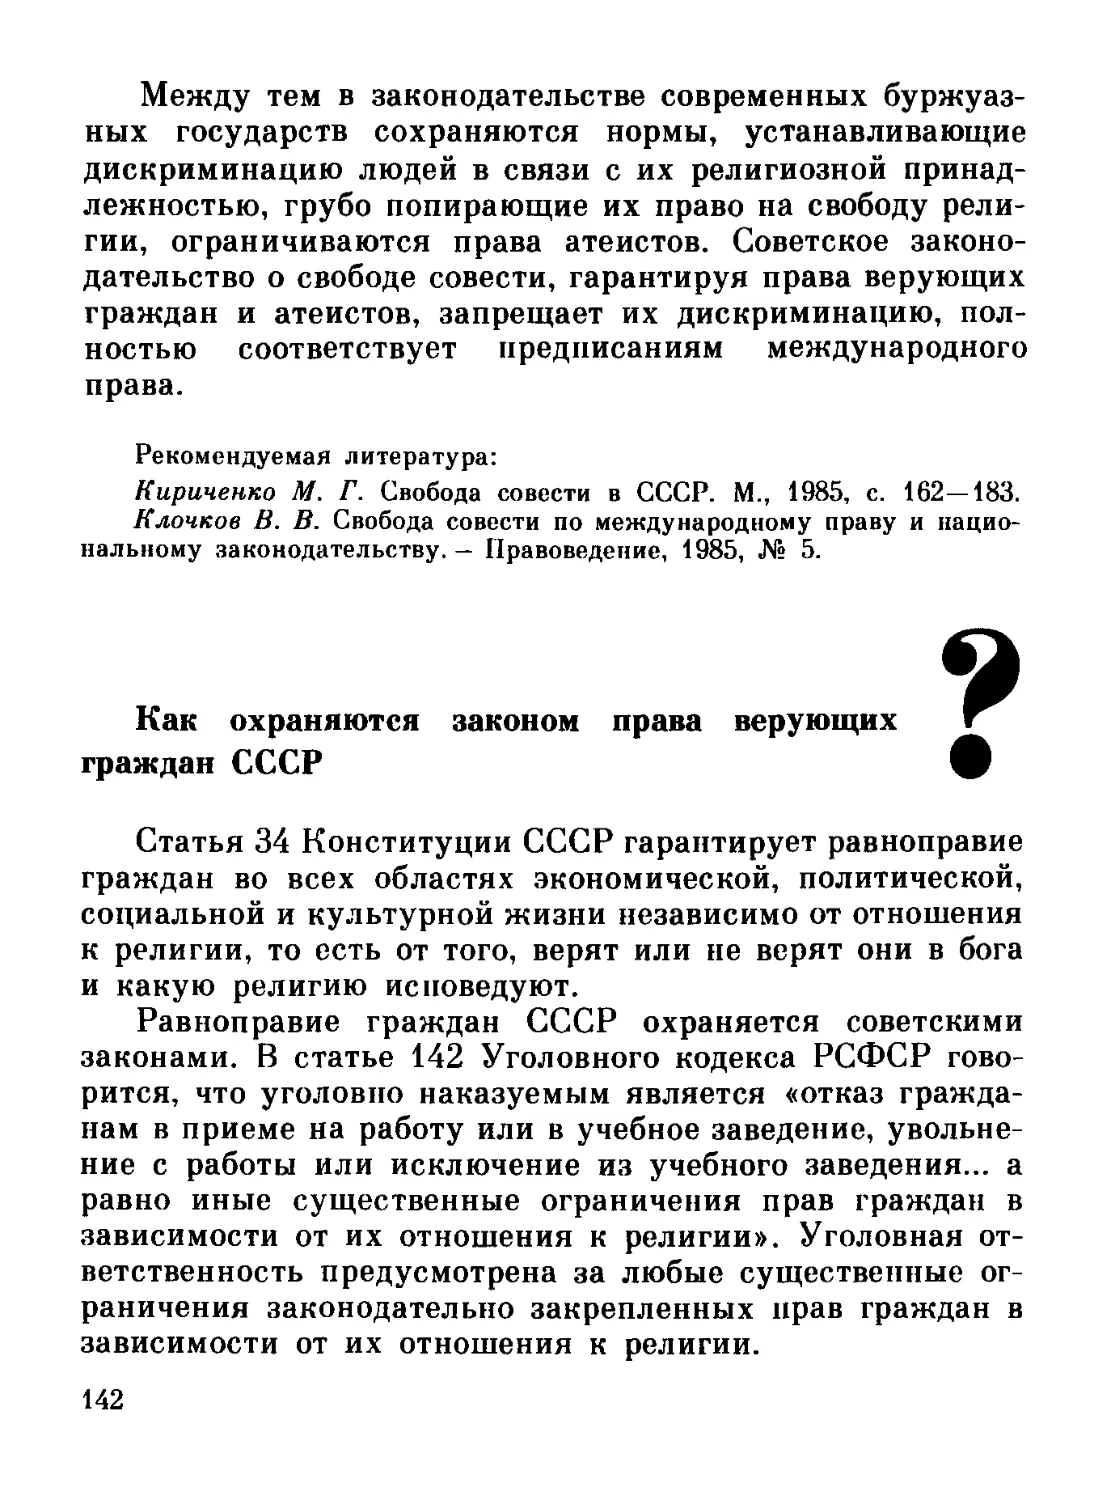 Как охраняются законом права верующих граждан СССР